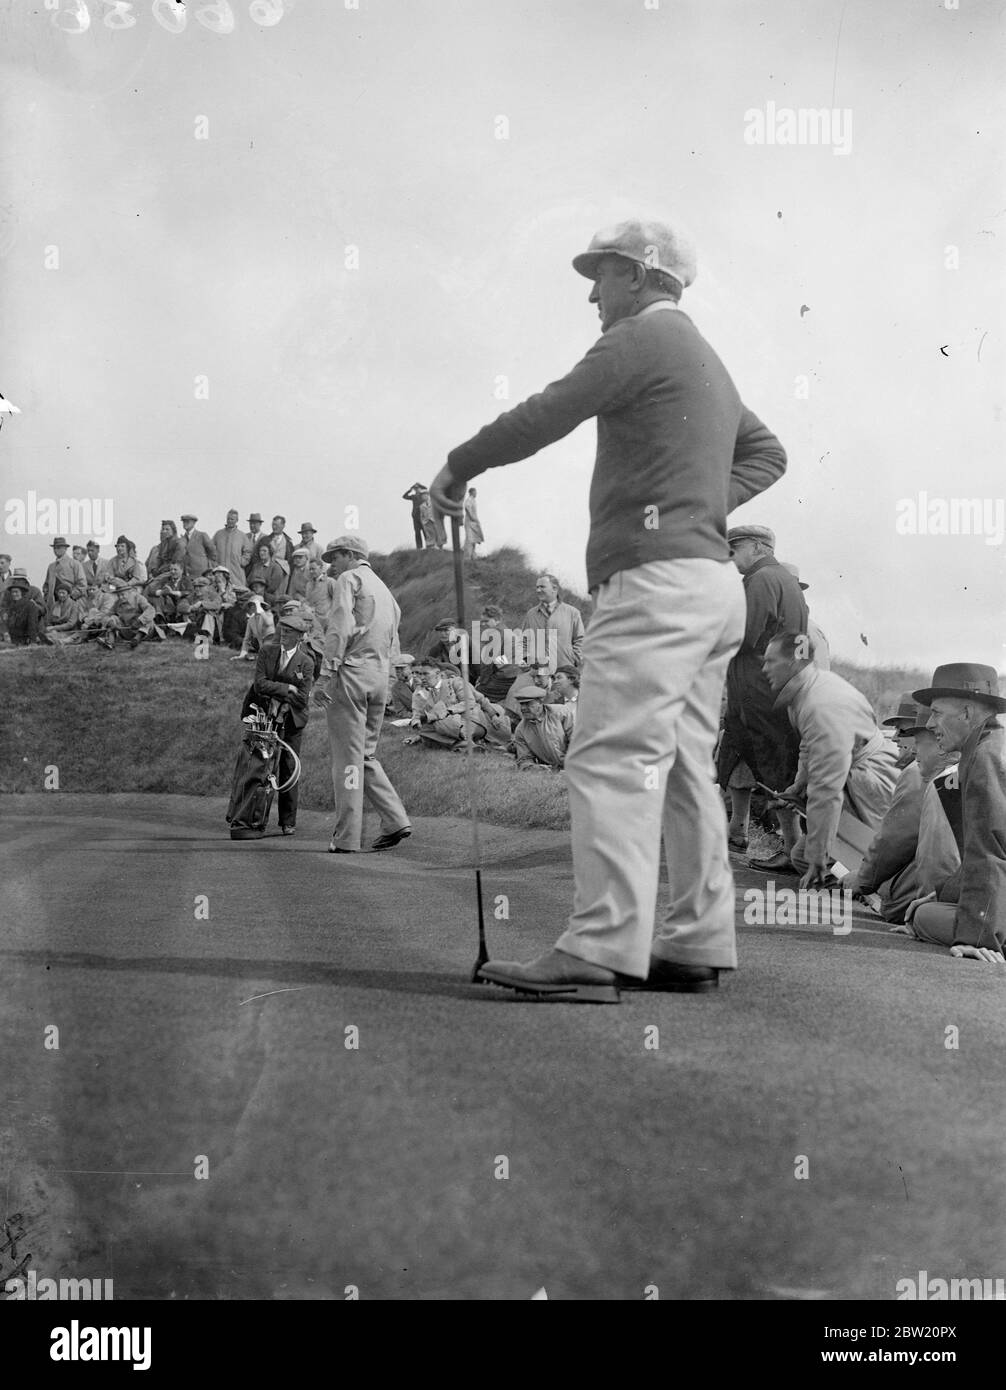 Le partite della Ryder Cup tra Gran Bretagna e America si sono aperte sul campo di Ainsdale a Southport, Lancashire. Ralph Guldahl mette sul secondo verde guardato dal suo compagno Tony Manero. Essi sconfissero A. J. Lacey e W. J. Cox d'Inghilterra 2 e 1. 29 giugno 1937 Foto Stock